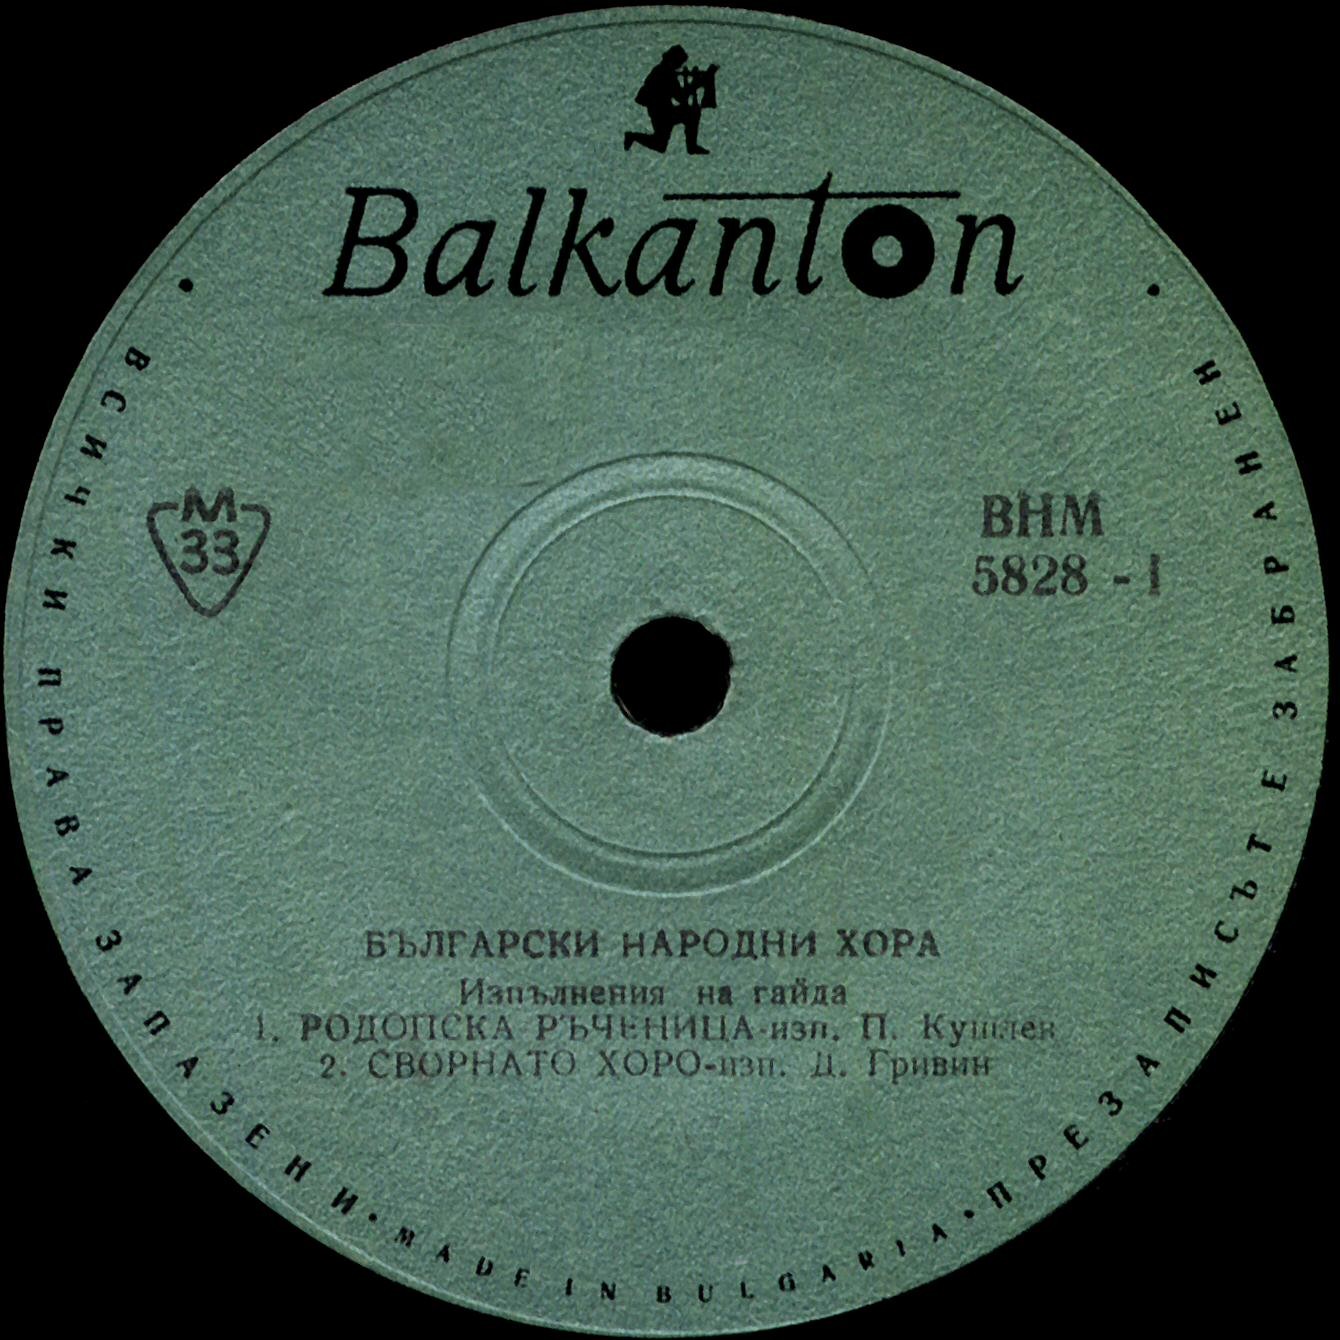 Български народни хора и мелодии. Изпълнения на гайда